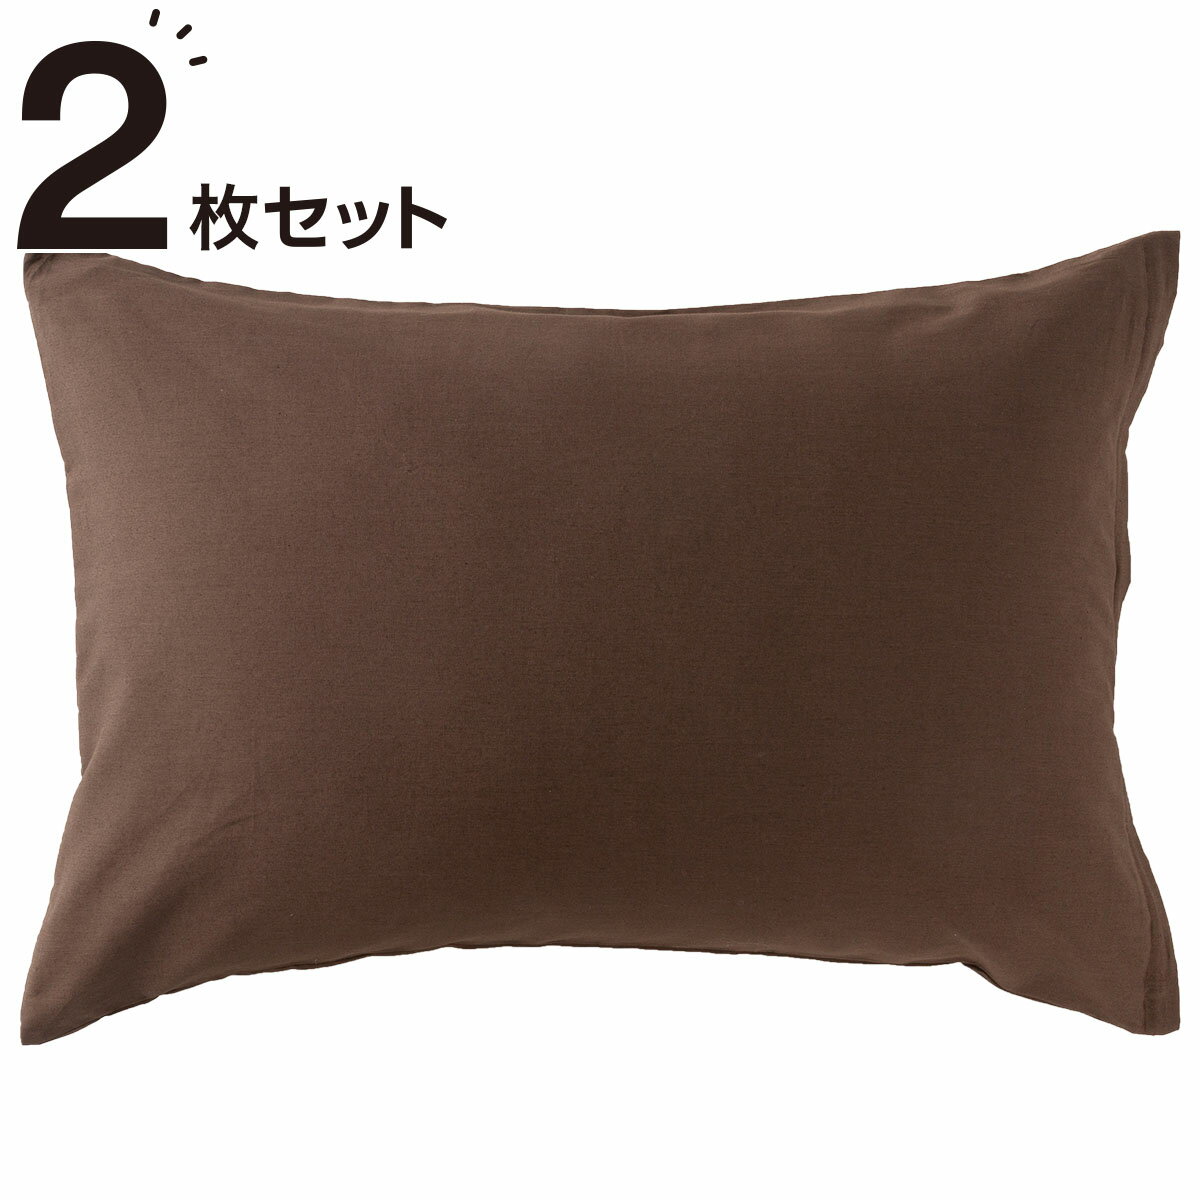 ニトリの枕カバー 2枚セット(パレットCBR2)   【1年保証】(布団・寝具)